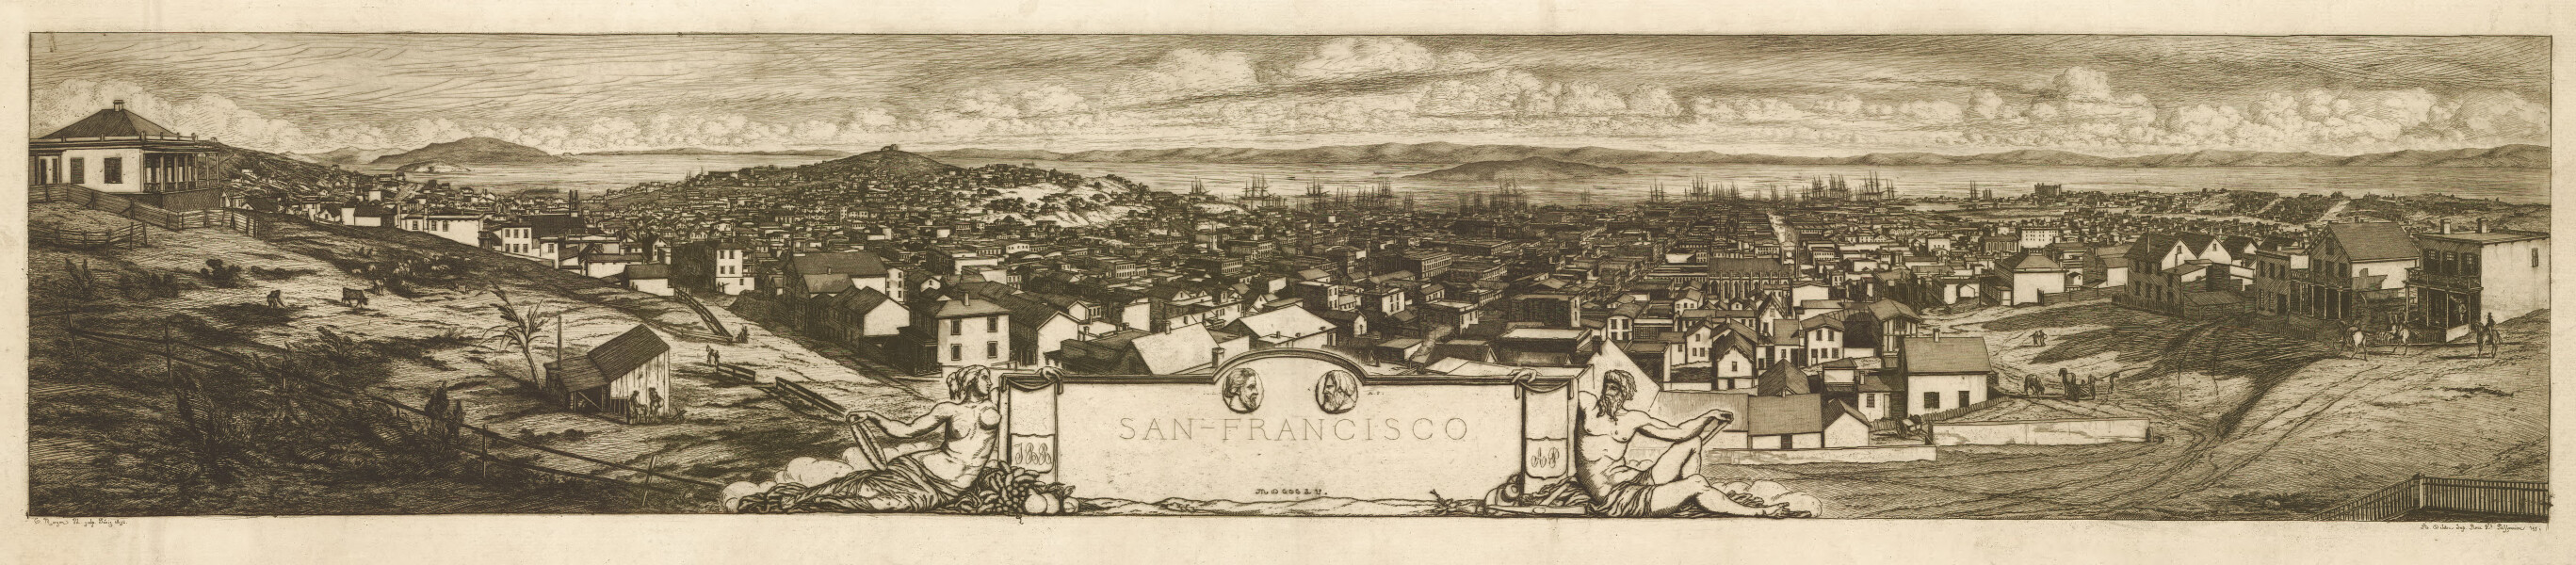 E65 - San Francisco - 1855